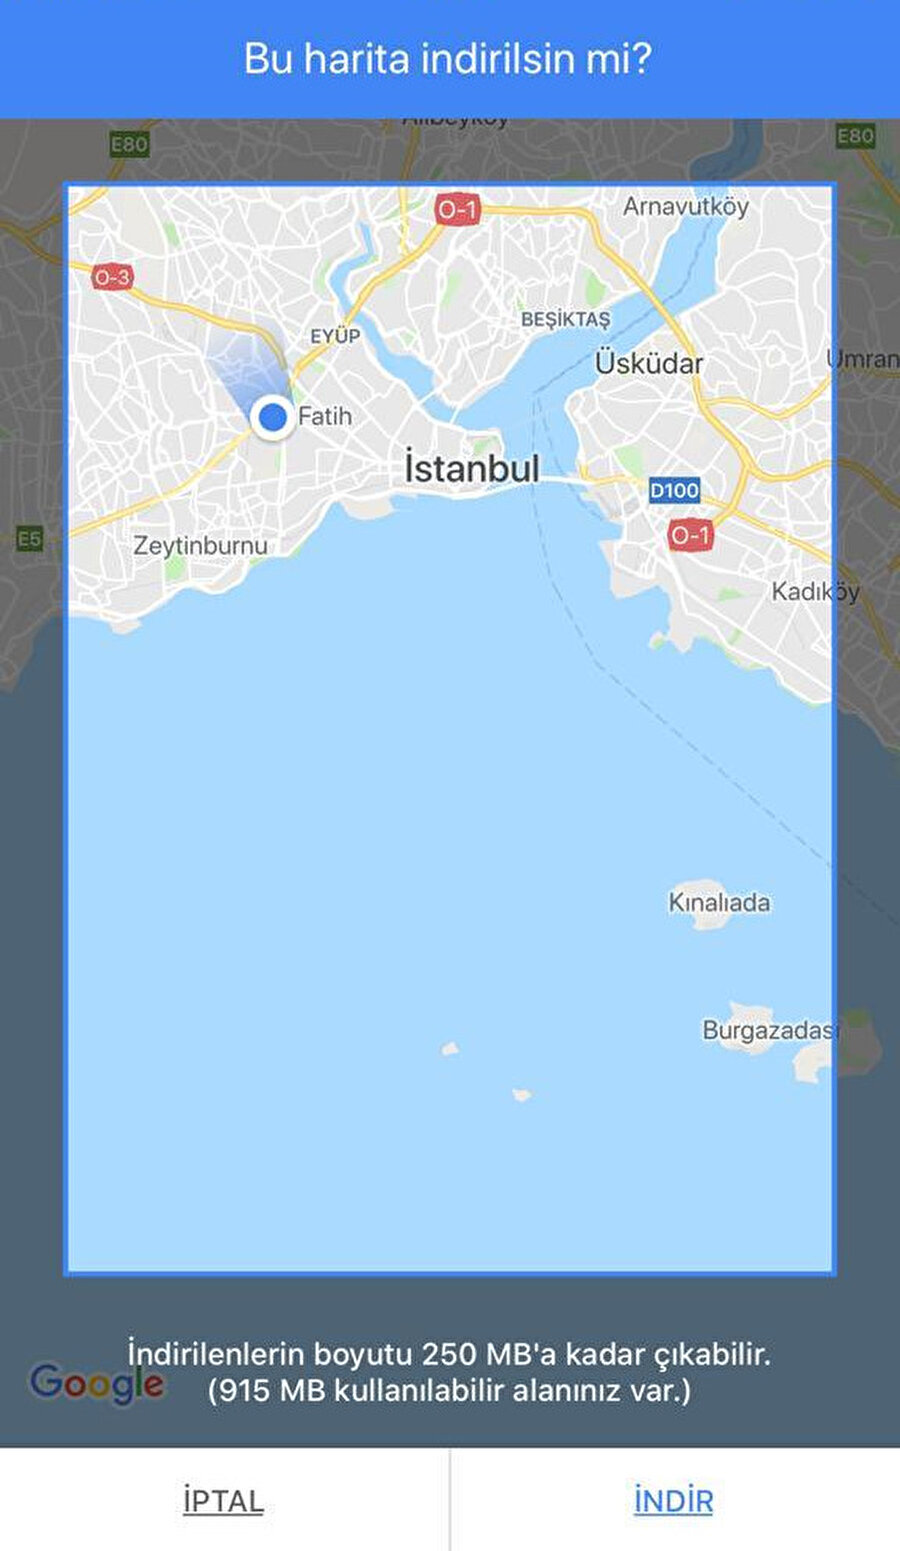 Google Haritalar'da belirli bir bölgeye ait özel haritayı seçip indirebilirsiniz. Böylece mobil kotadan harcamadan çevrimdışı olarak uygulamayı kullanmaya devam edebilirsiniz.